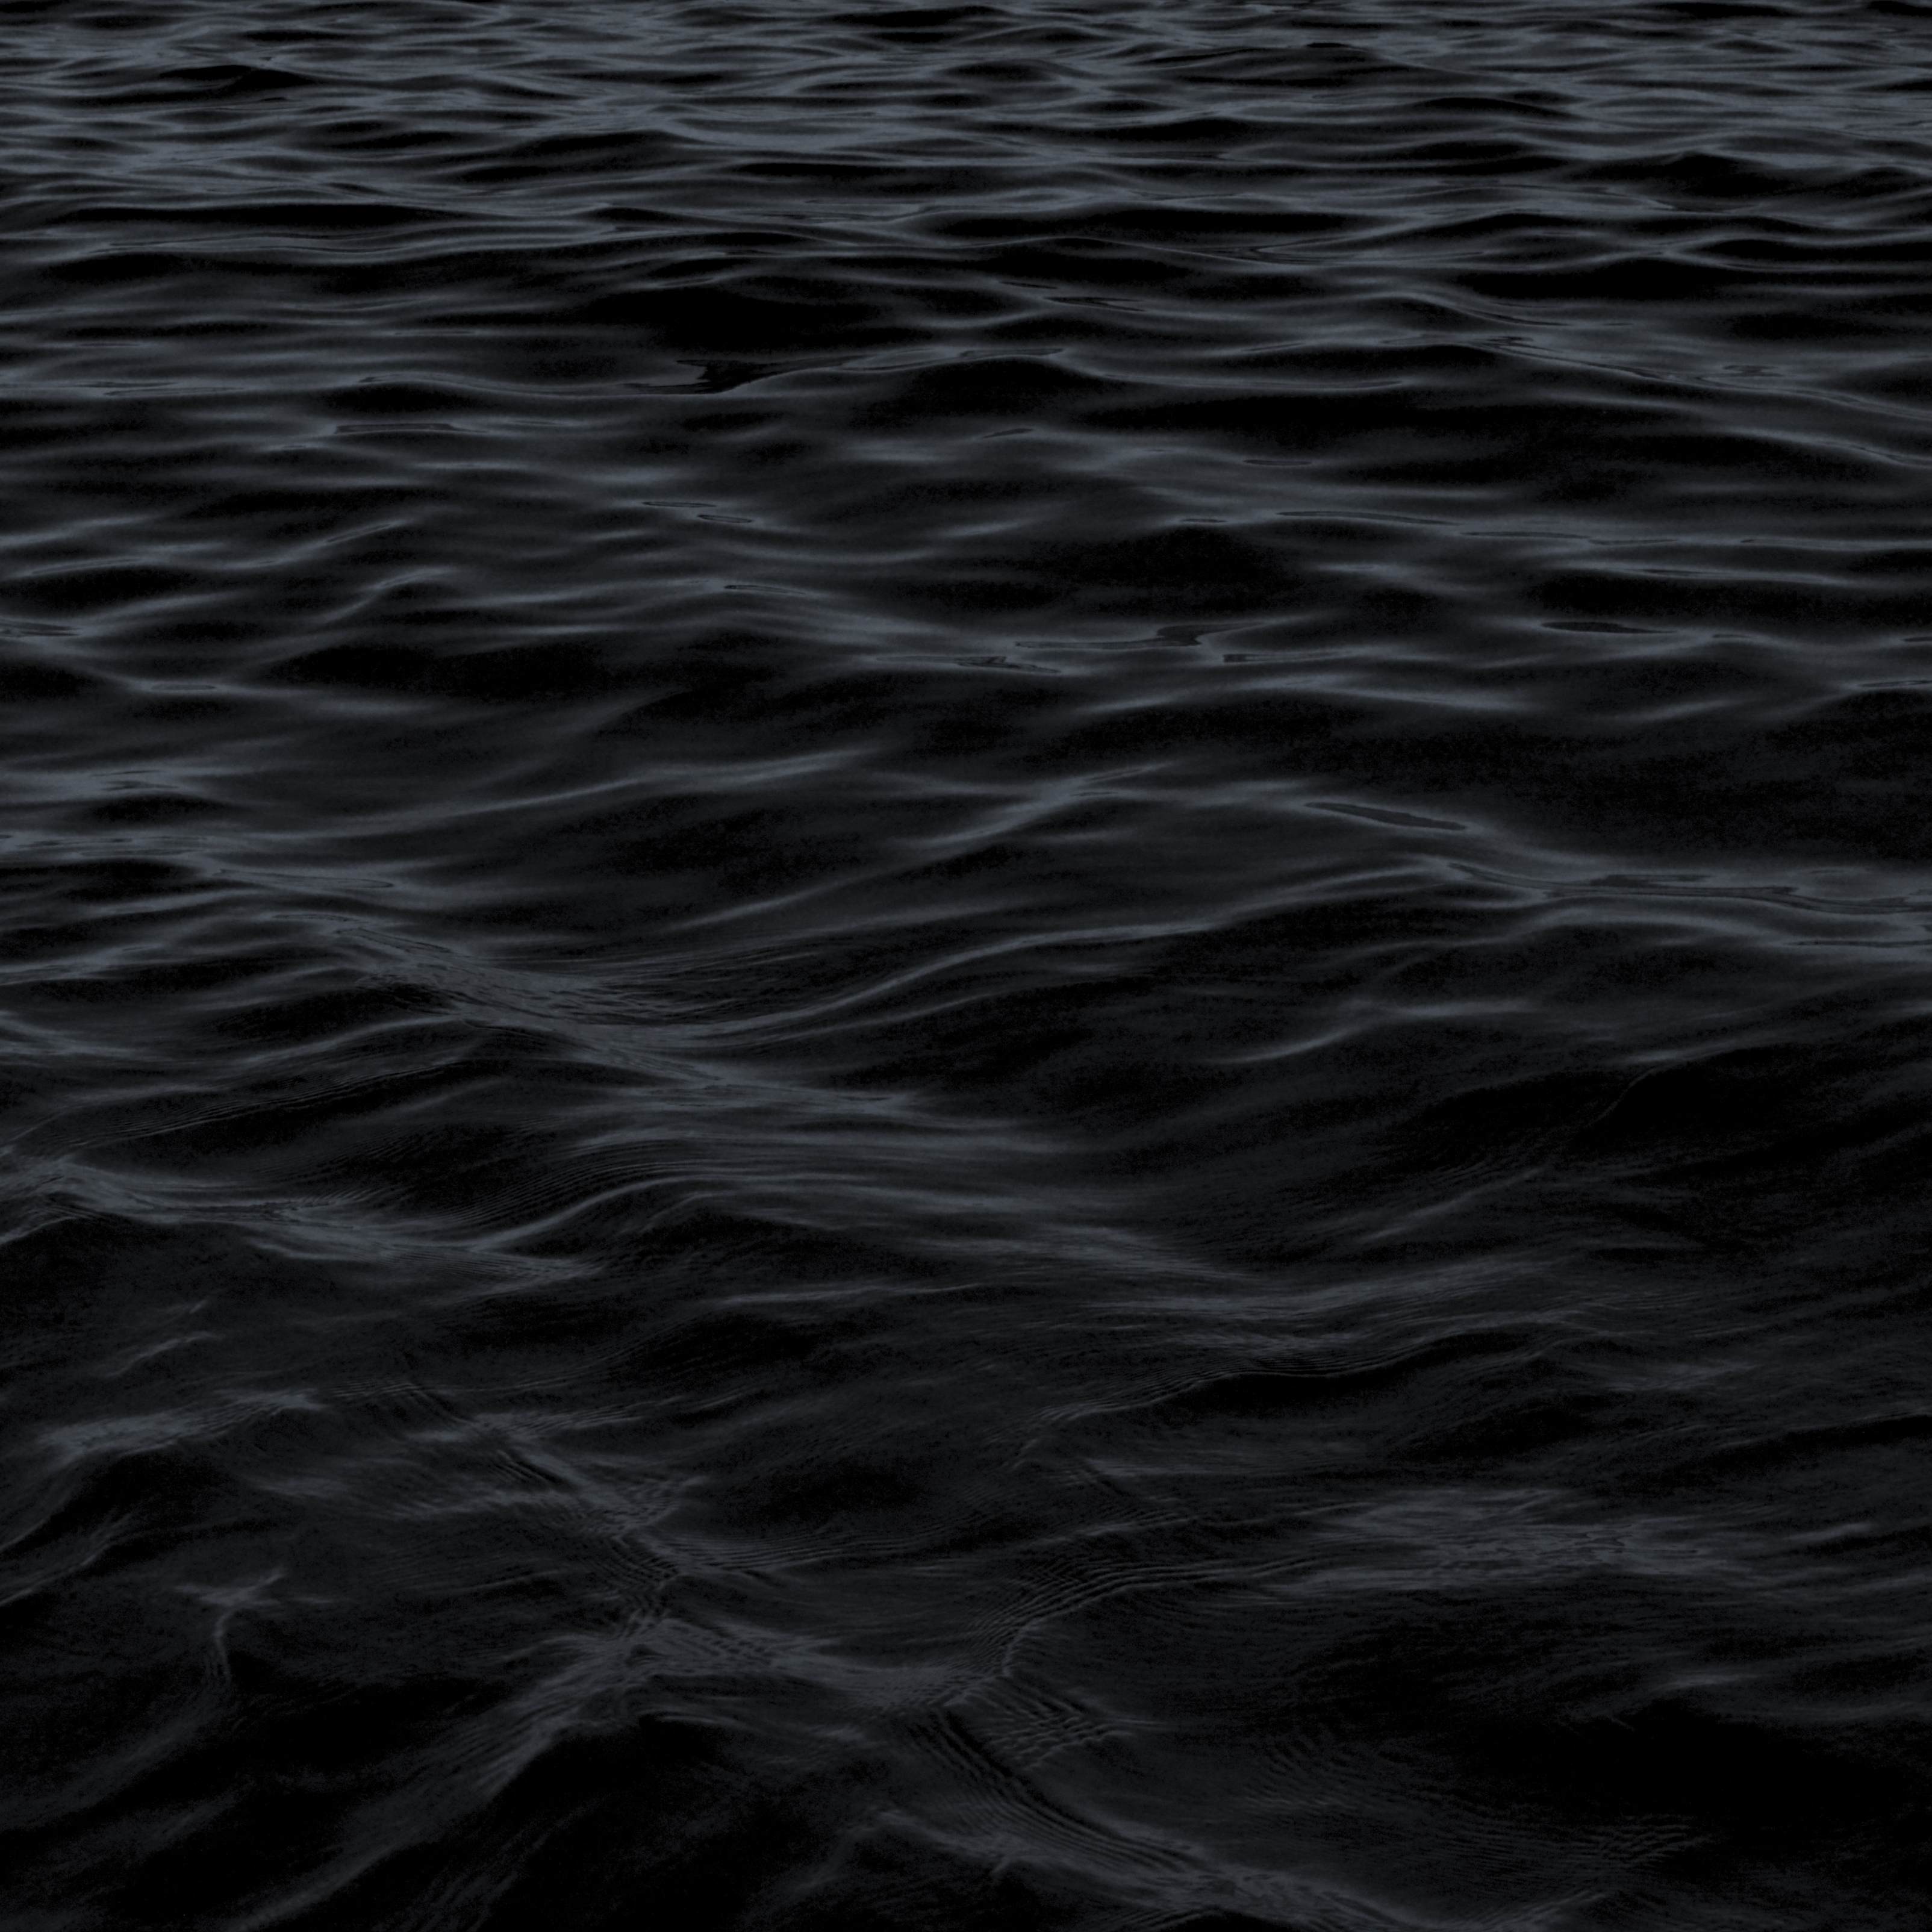 3208x3208 iPad Pro wallpaper 4k Dark Water Waves Sea Pattern iPad Wallpaper 3208x3208 pixels resolution